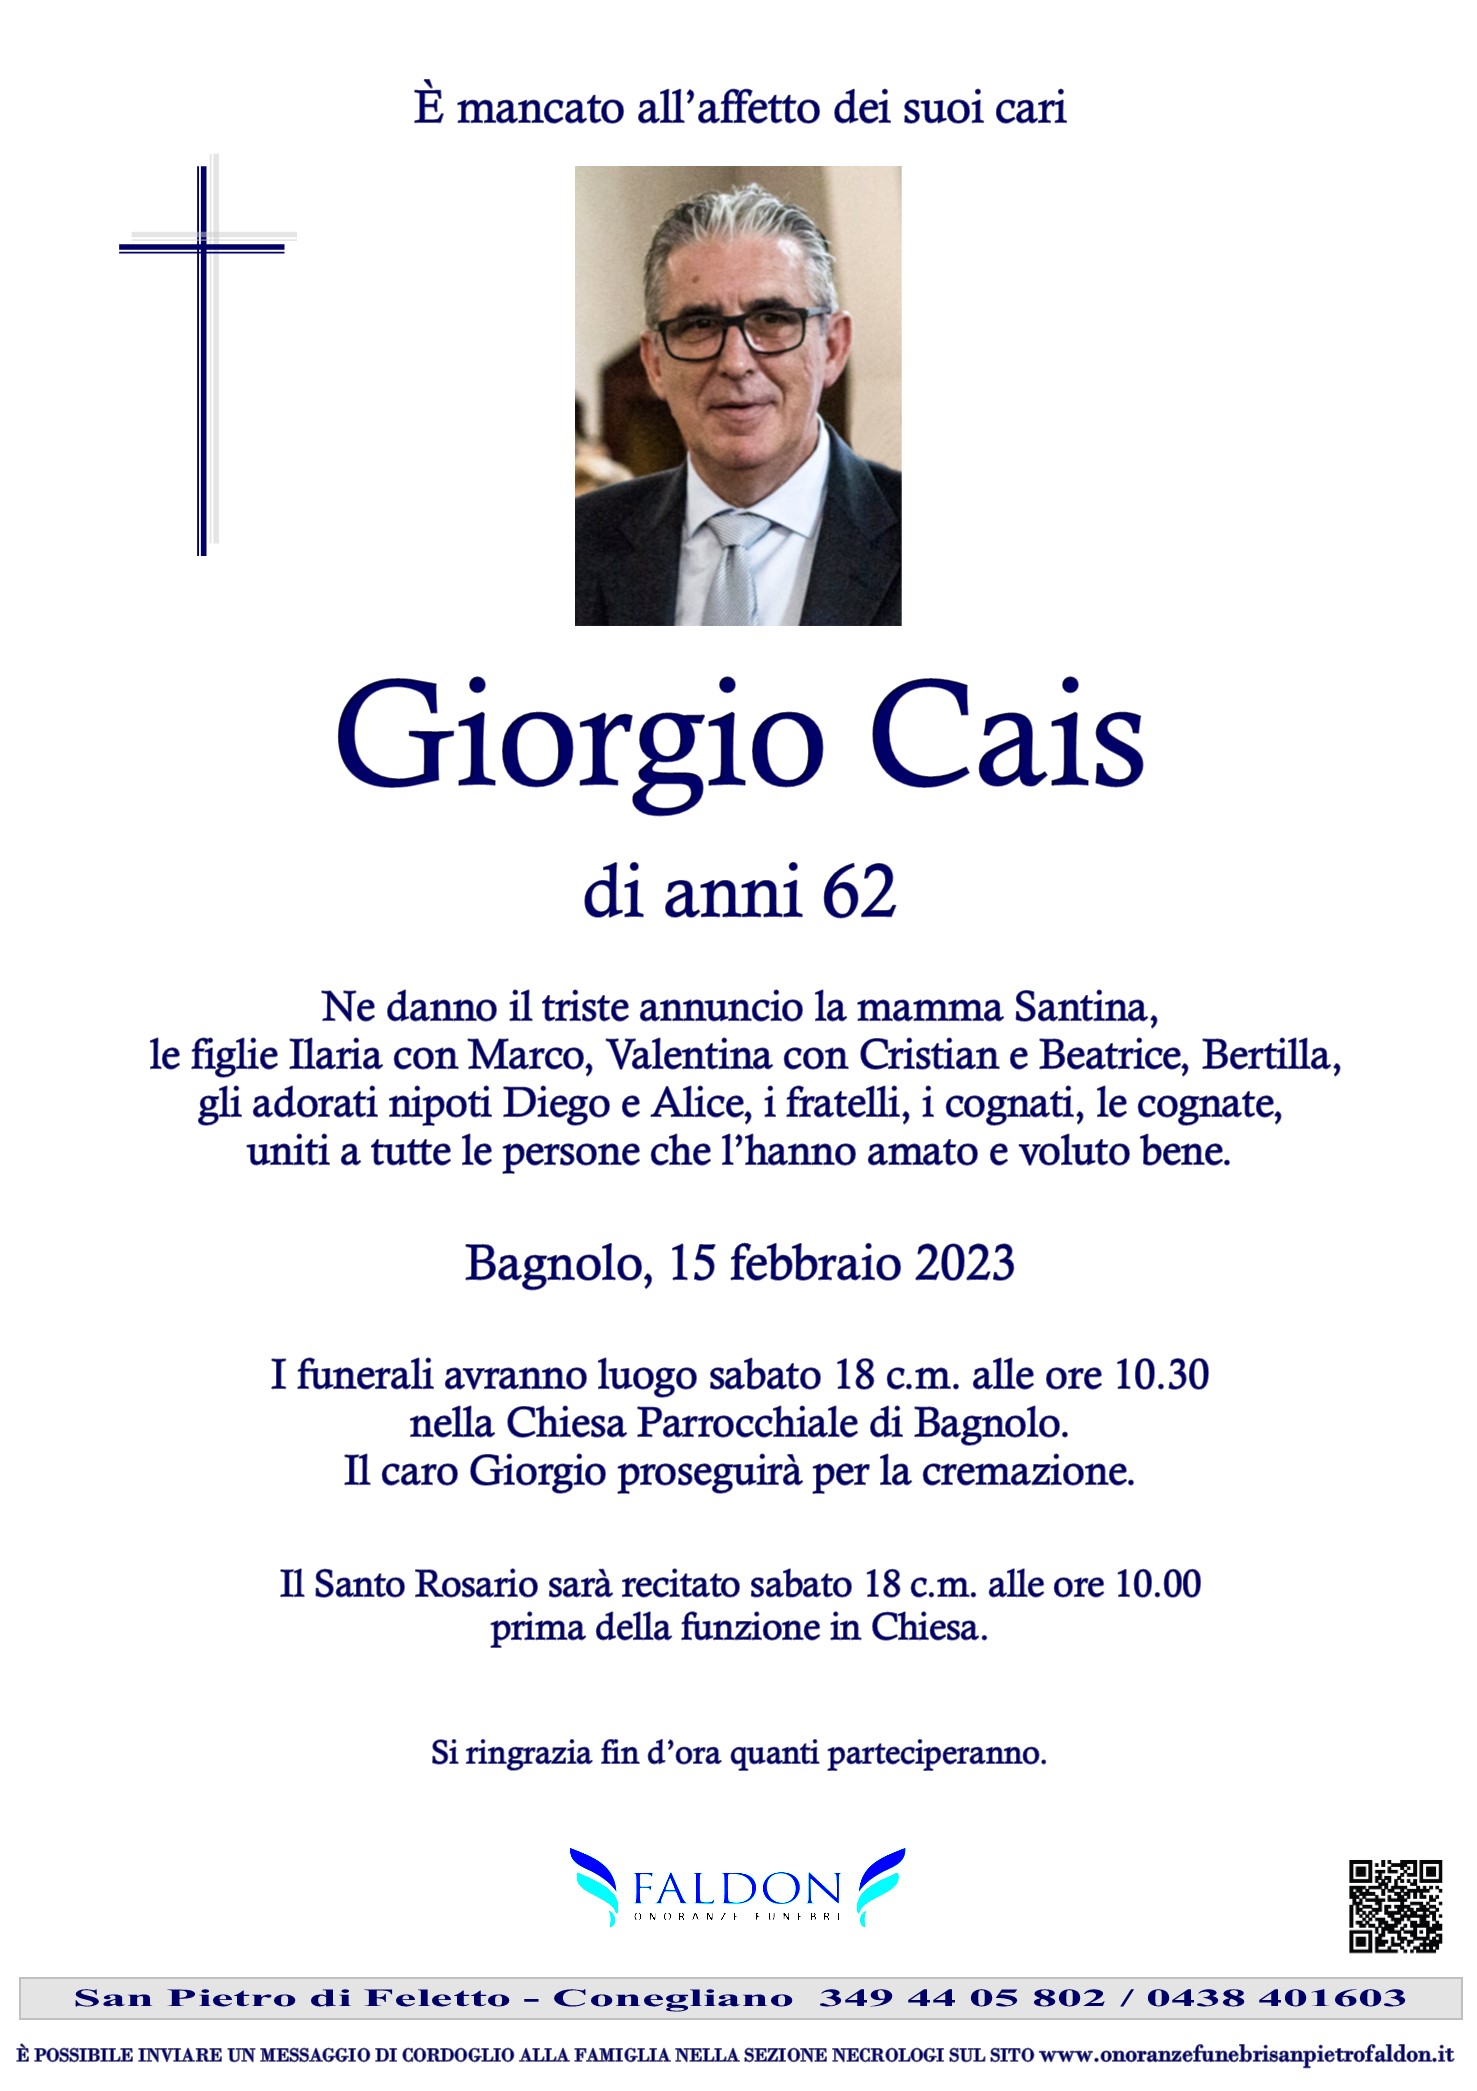 Giorgio Cais